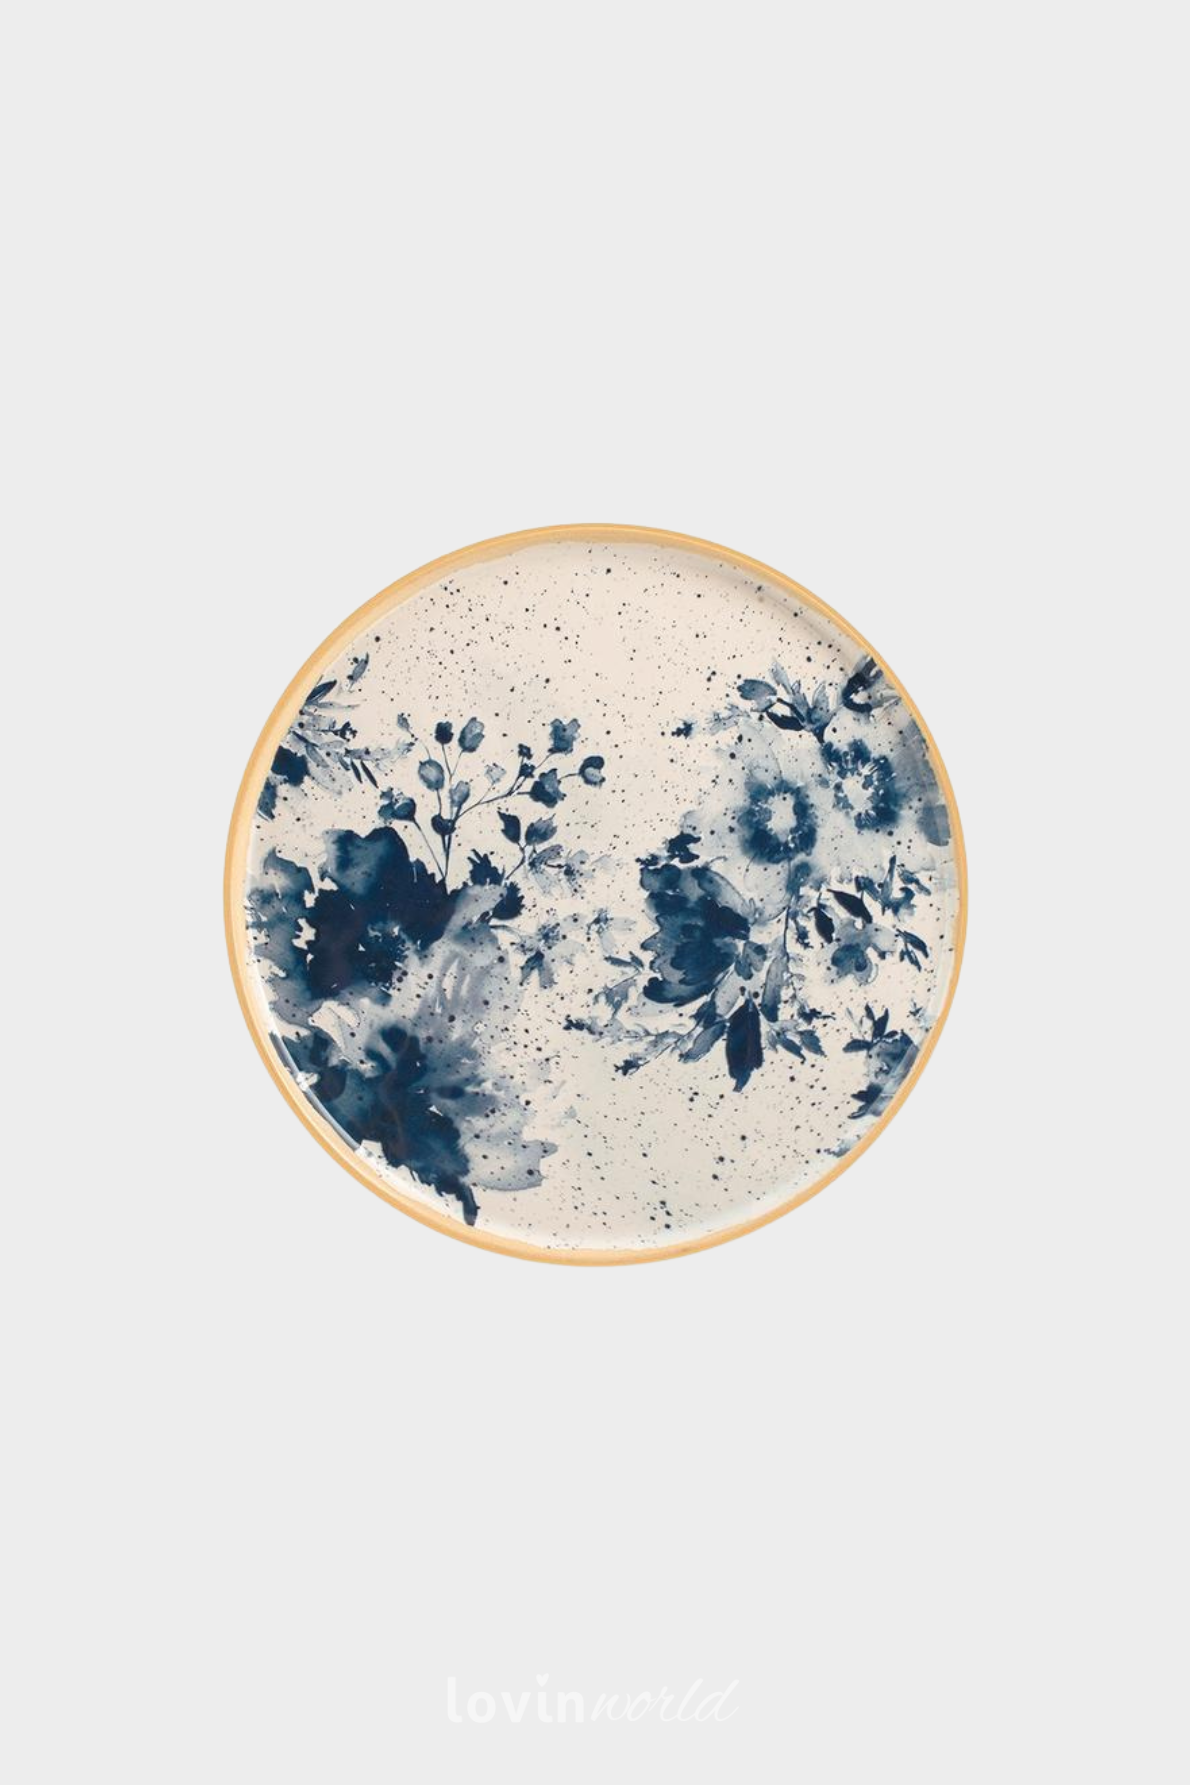 Piatto frutta Indigo in stoneware con decori floreali blu 21 cm.-1